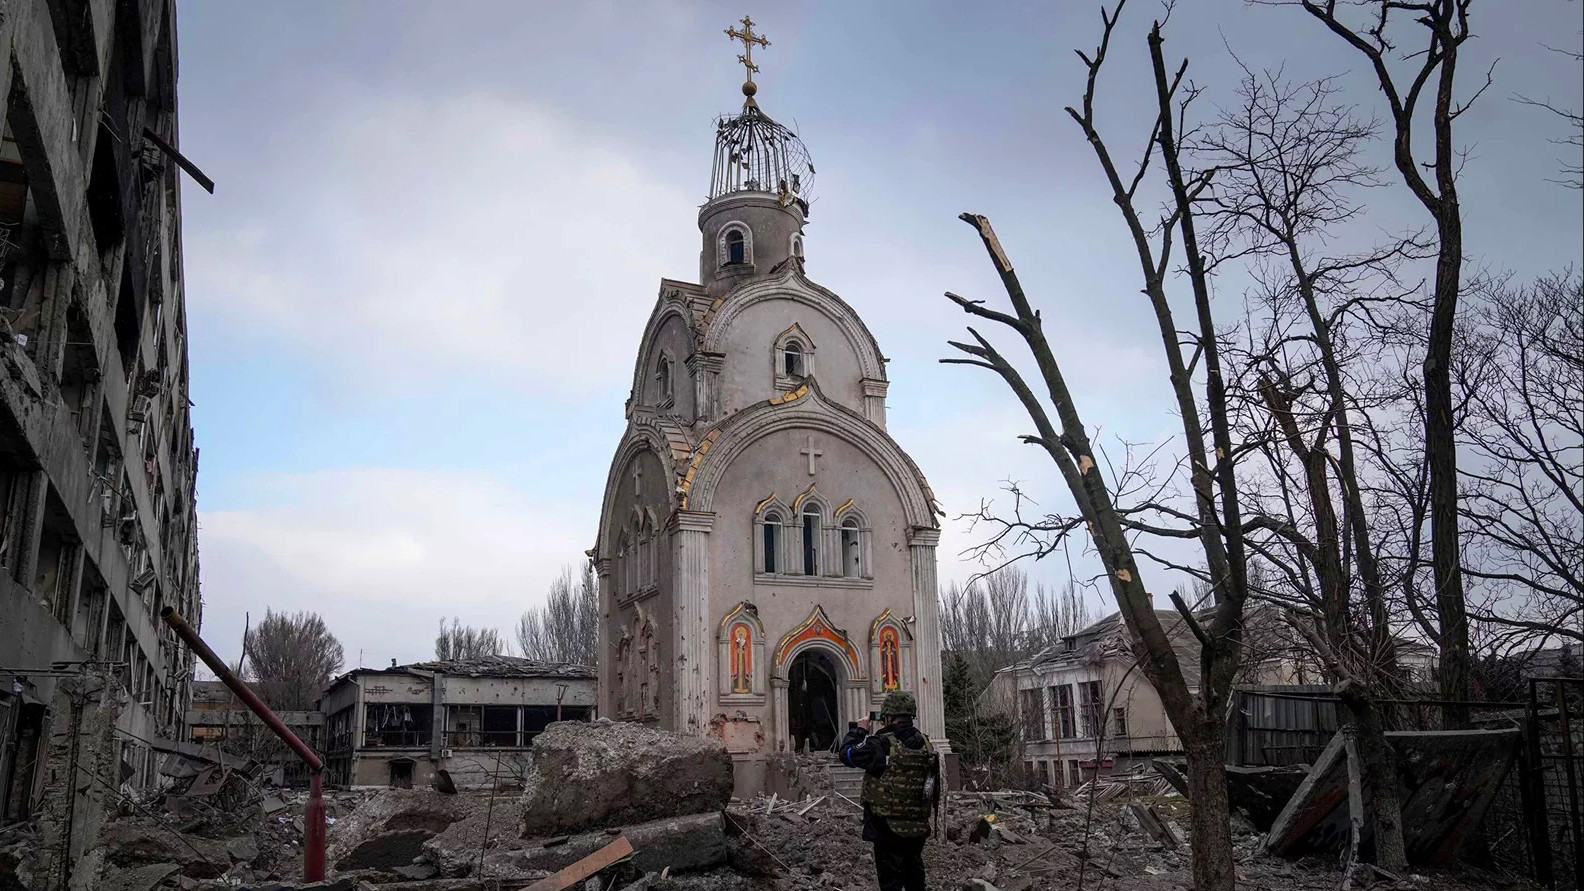 Звернення щодо наступу на свободу релігії під час збройної агресії Росії проти України